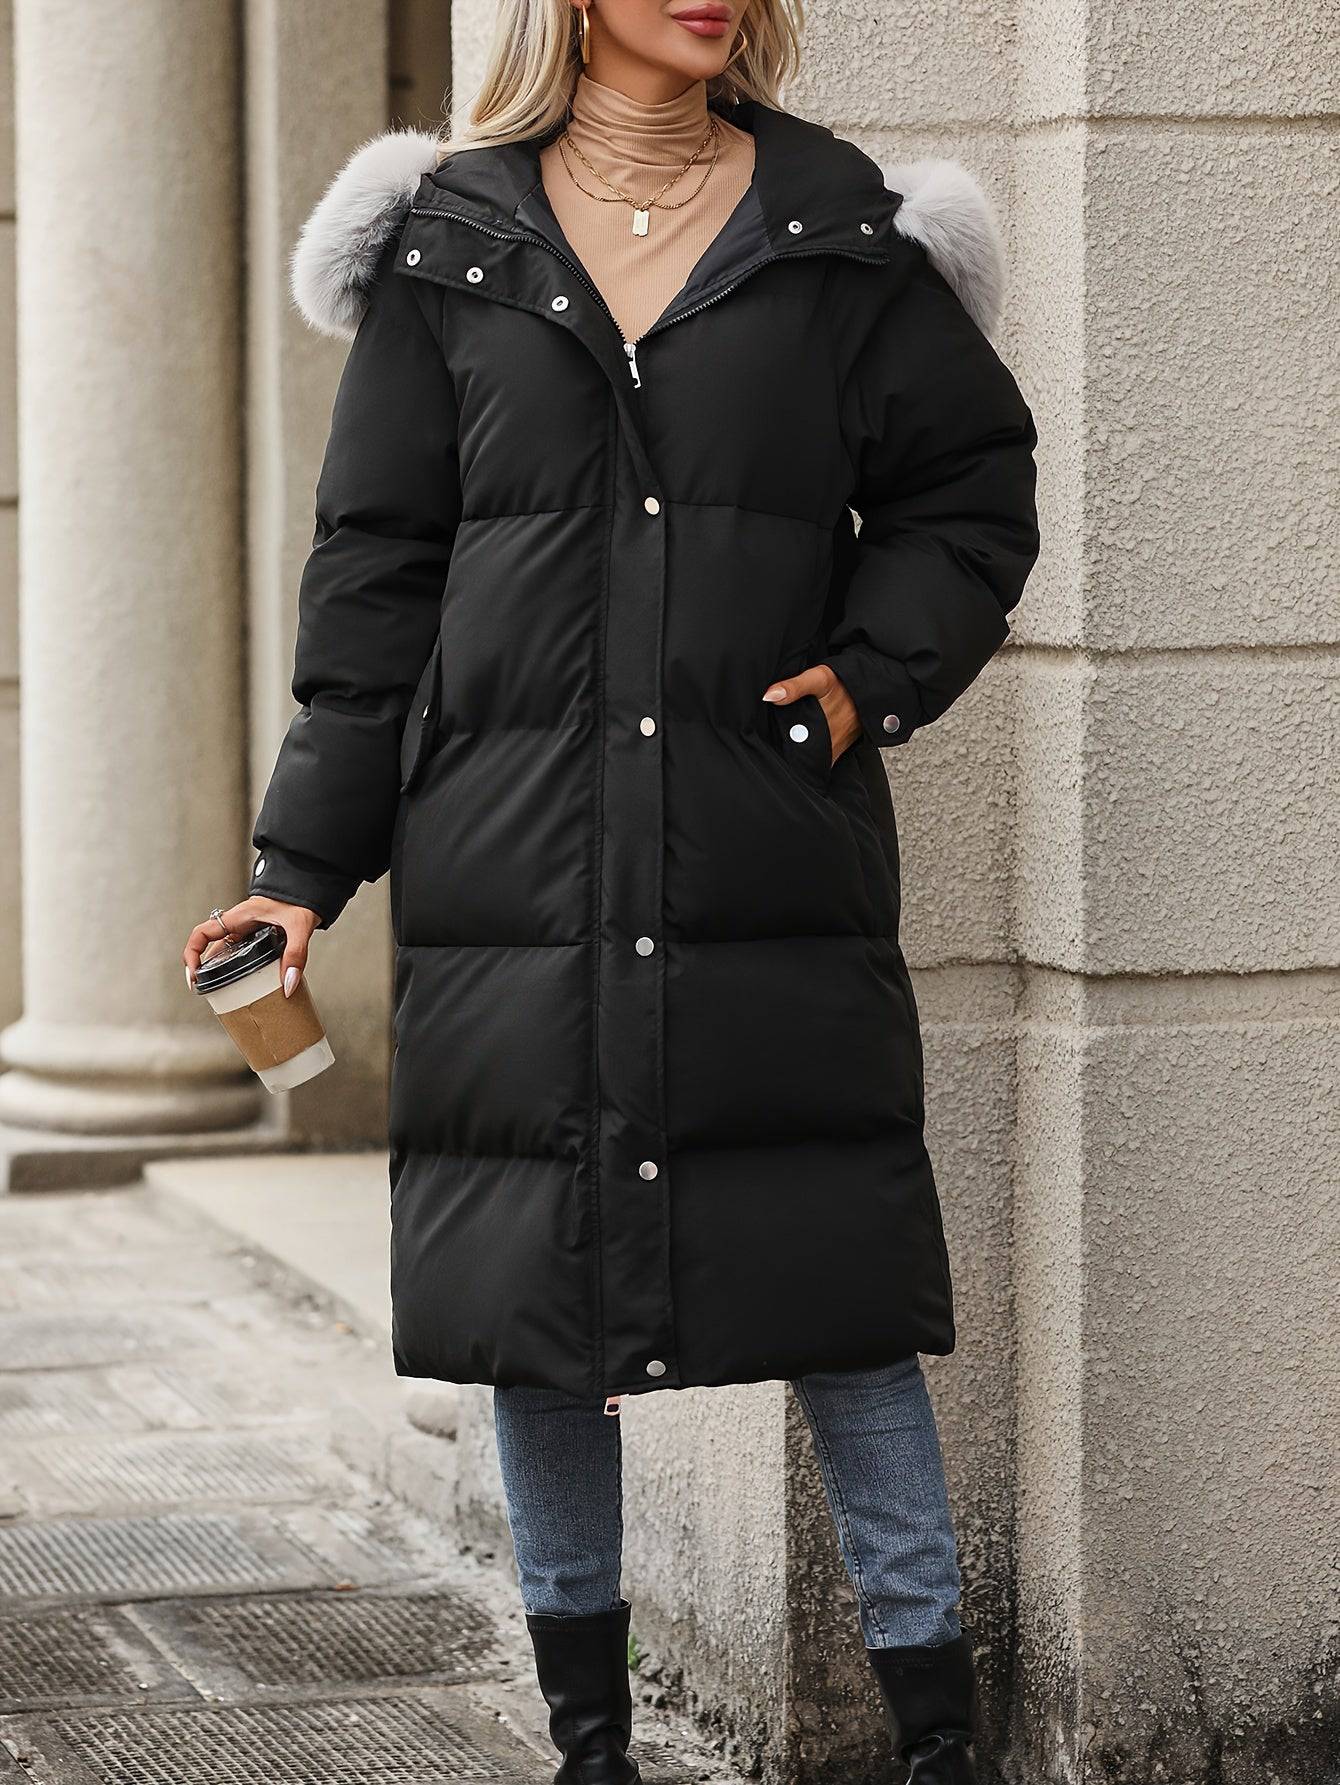 Flauschiger Winterkapuzenmantel - Lässige Damenbekleidung für kalte Tage.